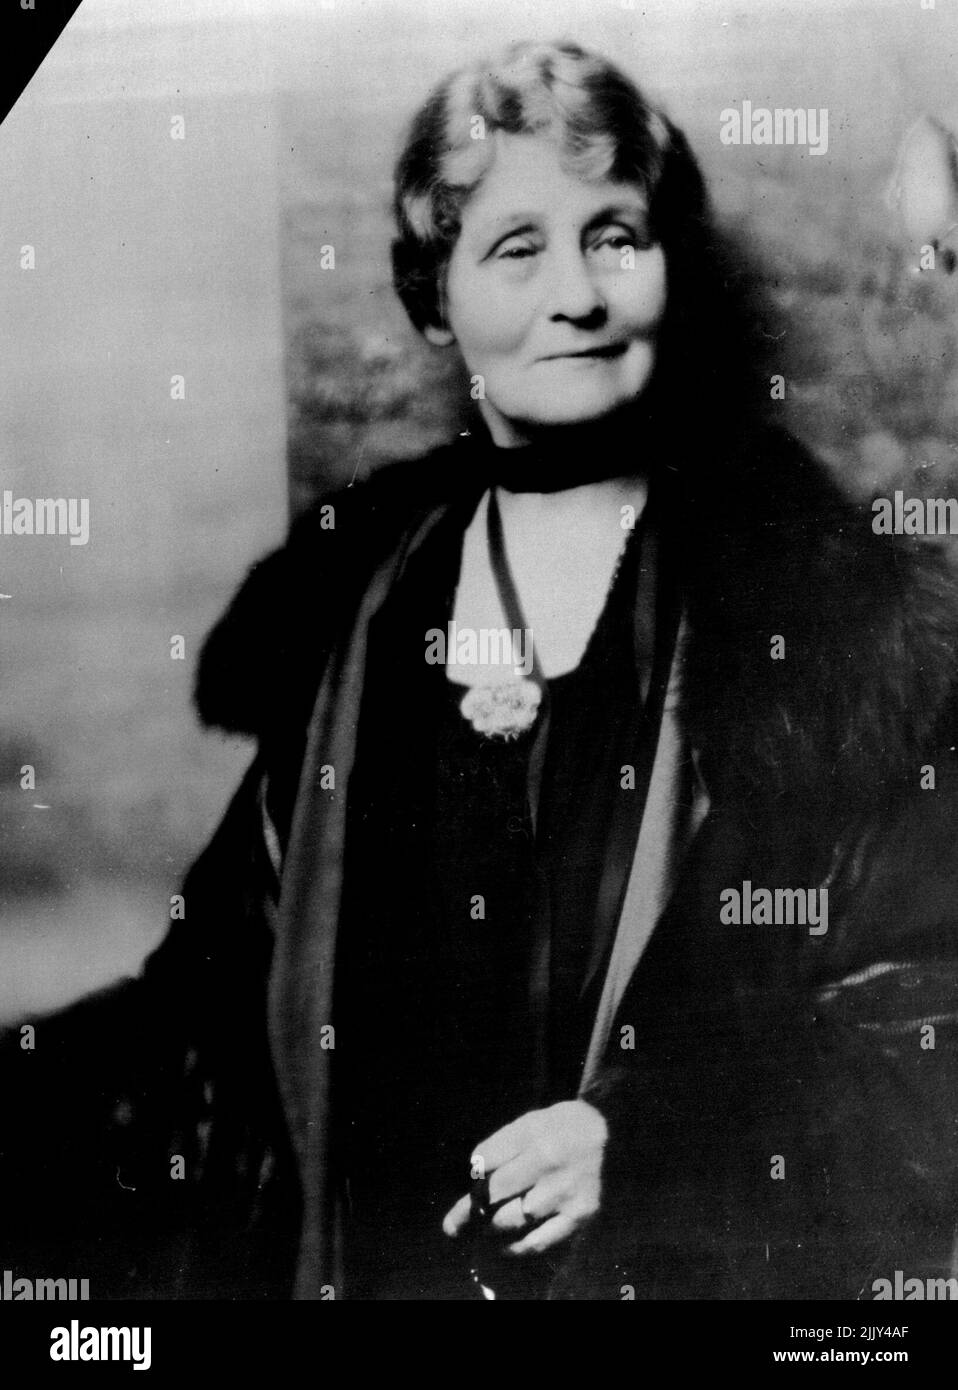 Frau Pankhurst Als Konservative ***** . Ein neues Porträt von Frau Emmeline Pankhurst ***** Berühmter Frauenrechtler, der letzte Nacht ***** Einstimmig als prospektiv konservativ angenommen ***** . 26.Mai 1947. Stockfoto